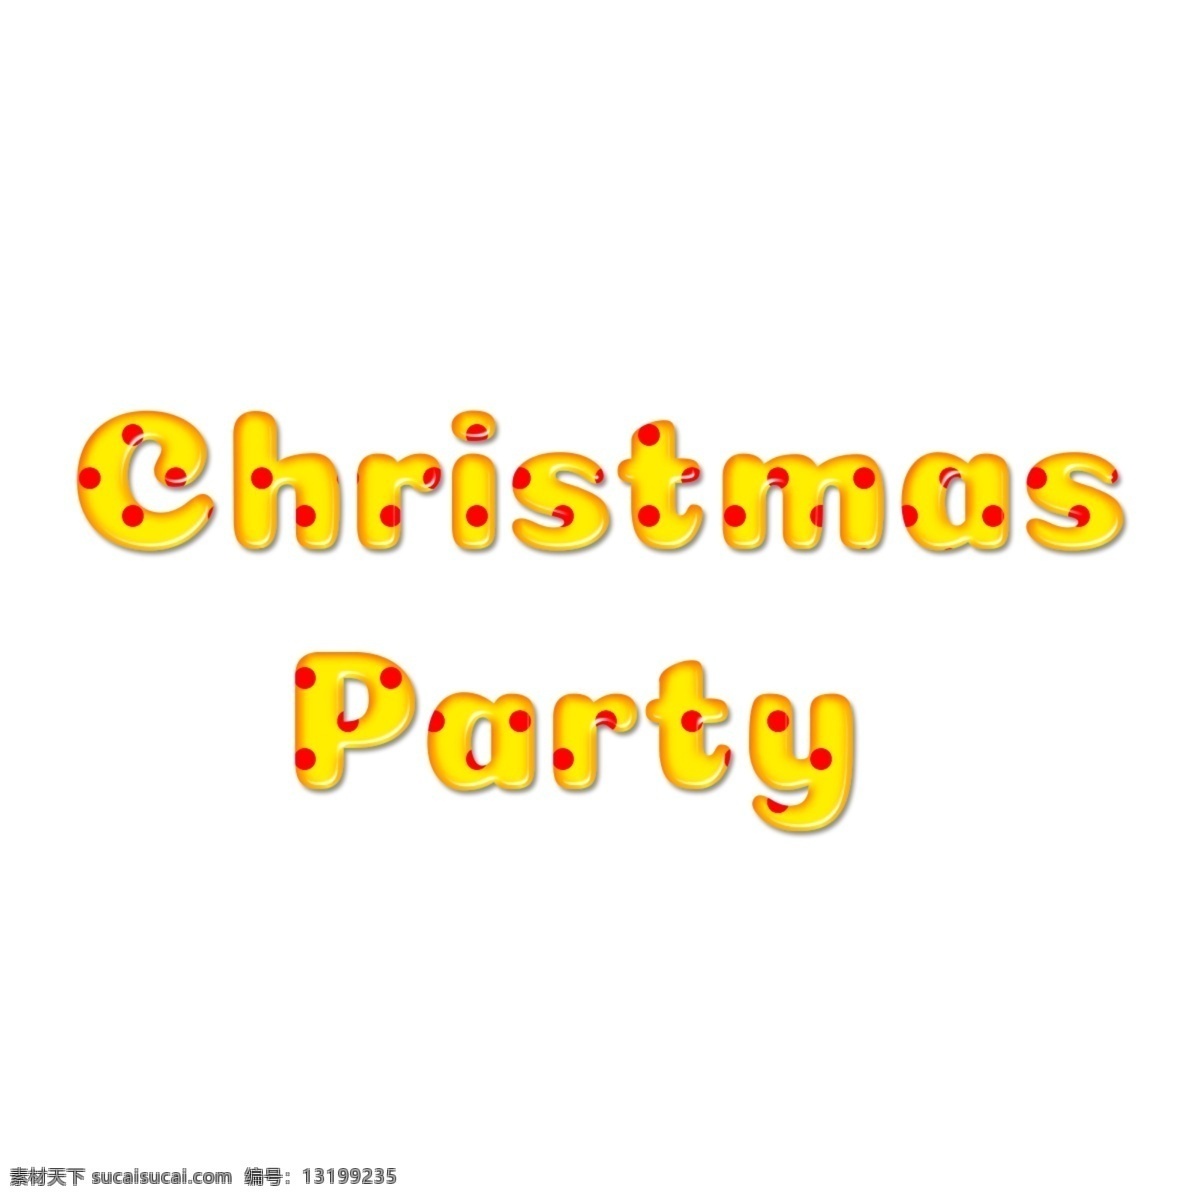 英语 字母 圣诞 晚会 艺术 性格 元素 透明的元素 圣诞晚会 png元素 元素设计 文字艺术 红点 黄色